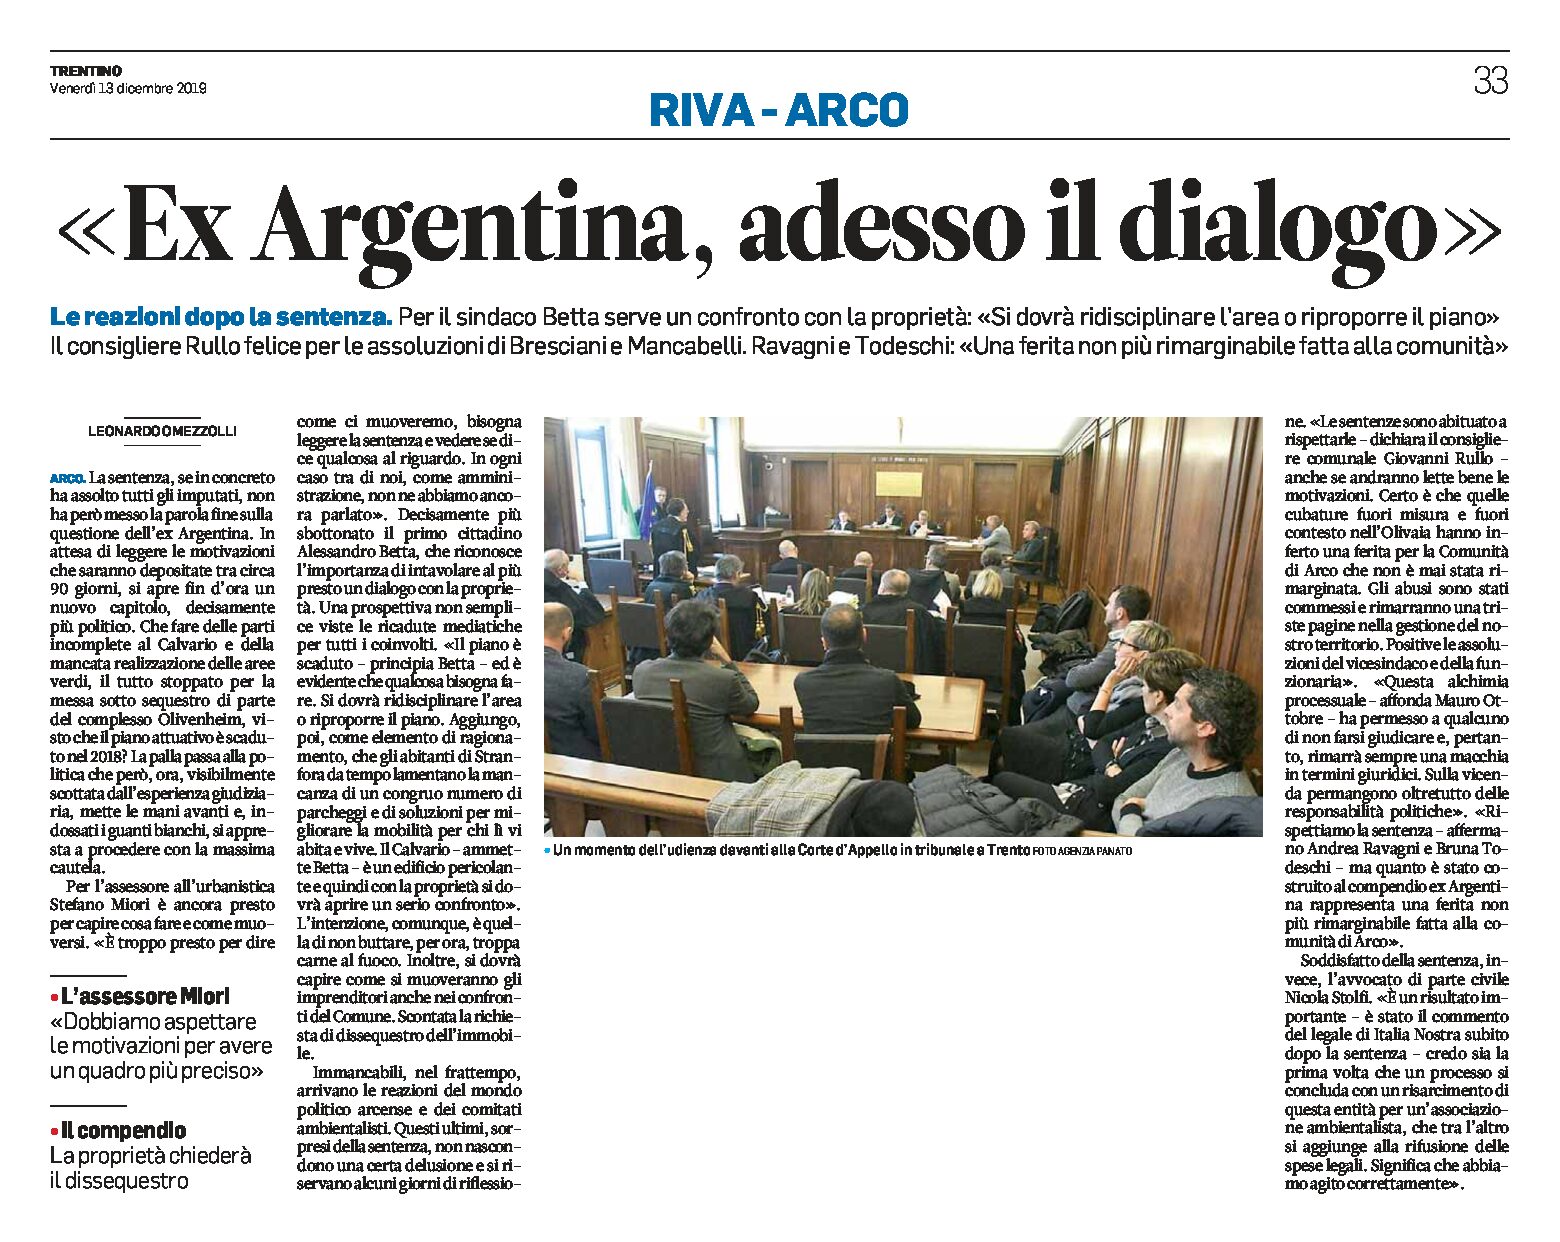 Arco, ex Argentina: adesso il dialogo